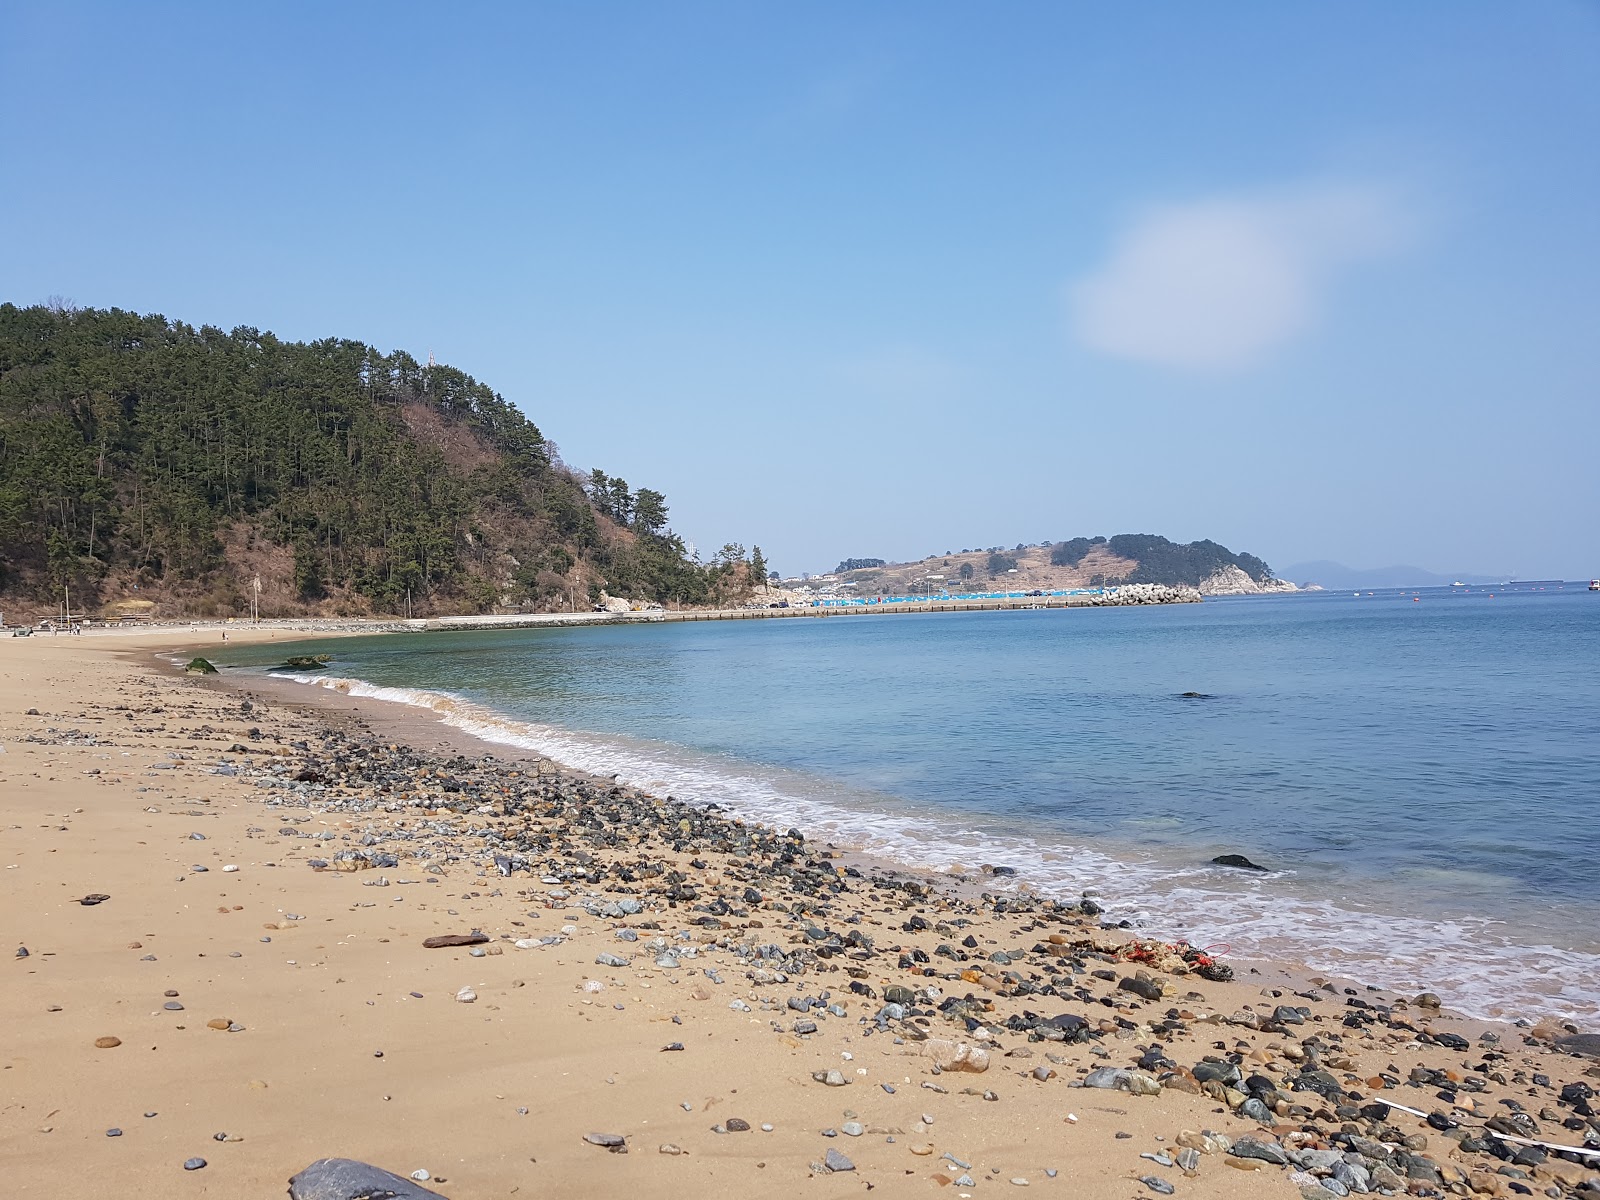 Heungnam Beach'in fotoğrafı parlak kum ve kayalar yüzey ile